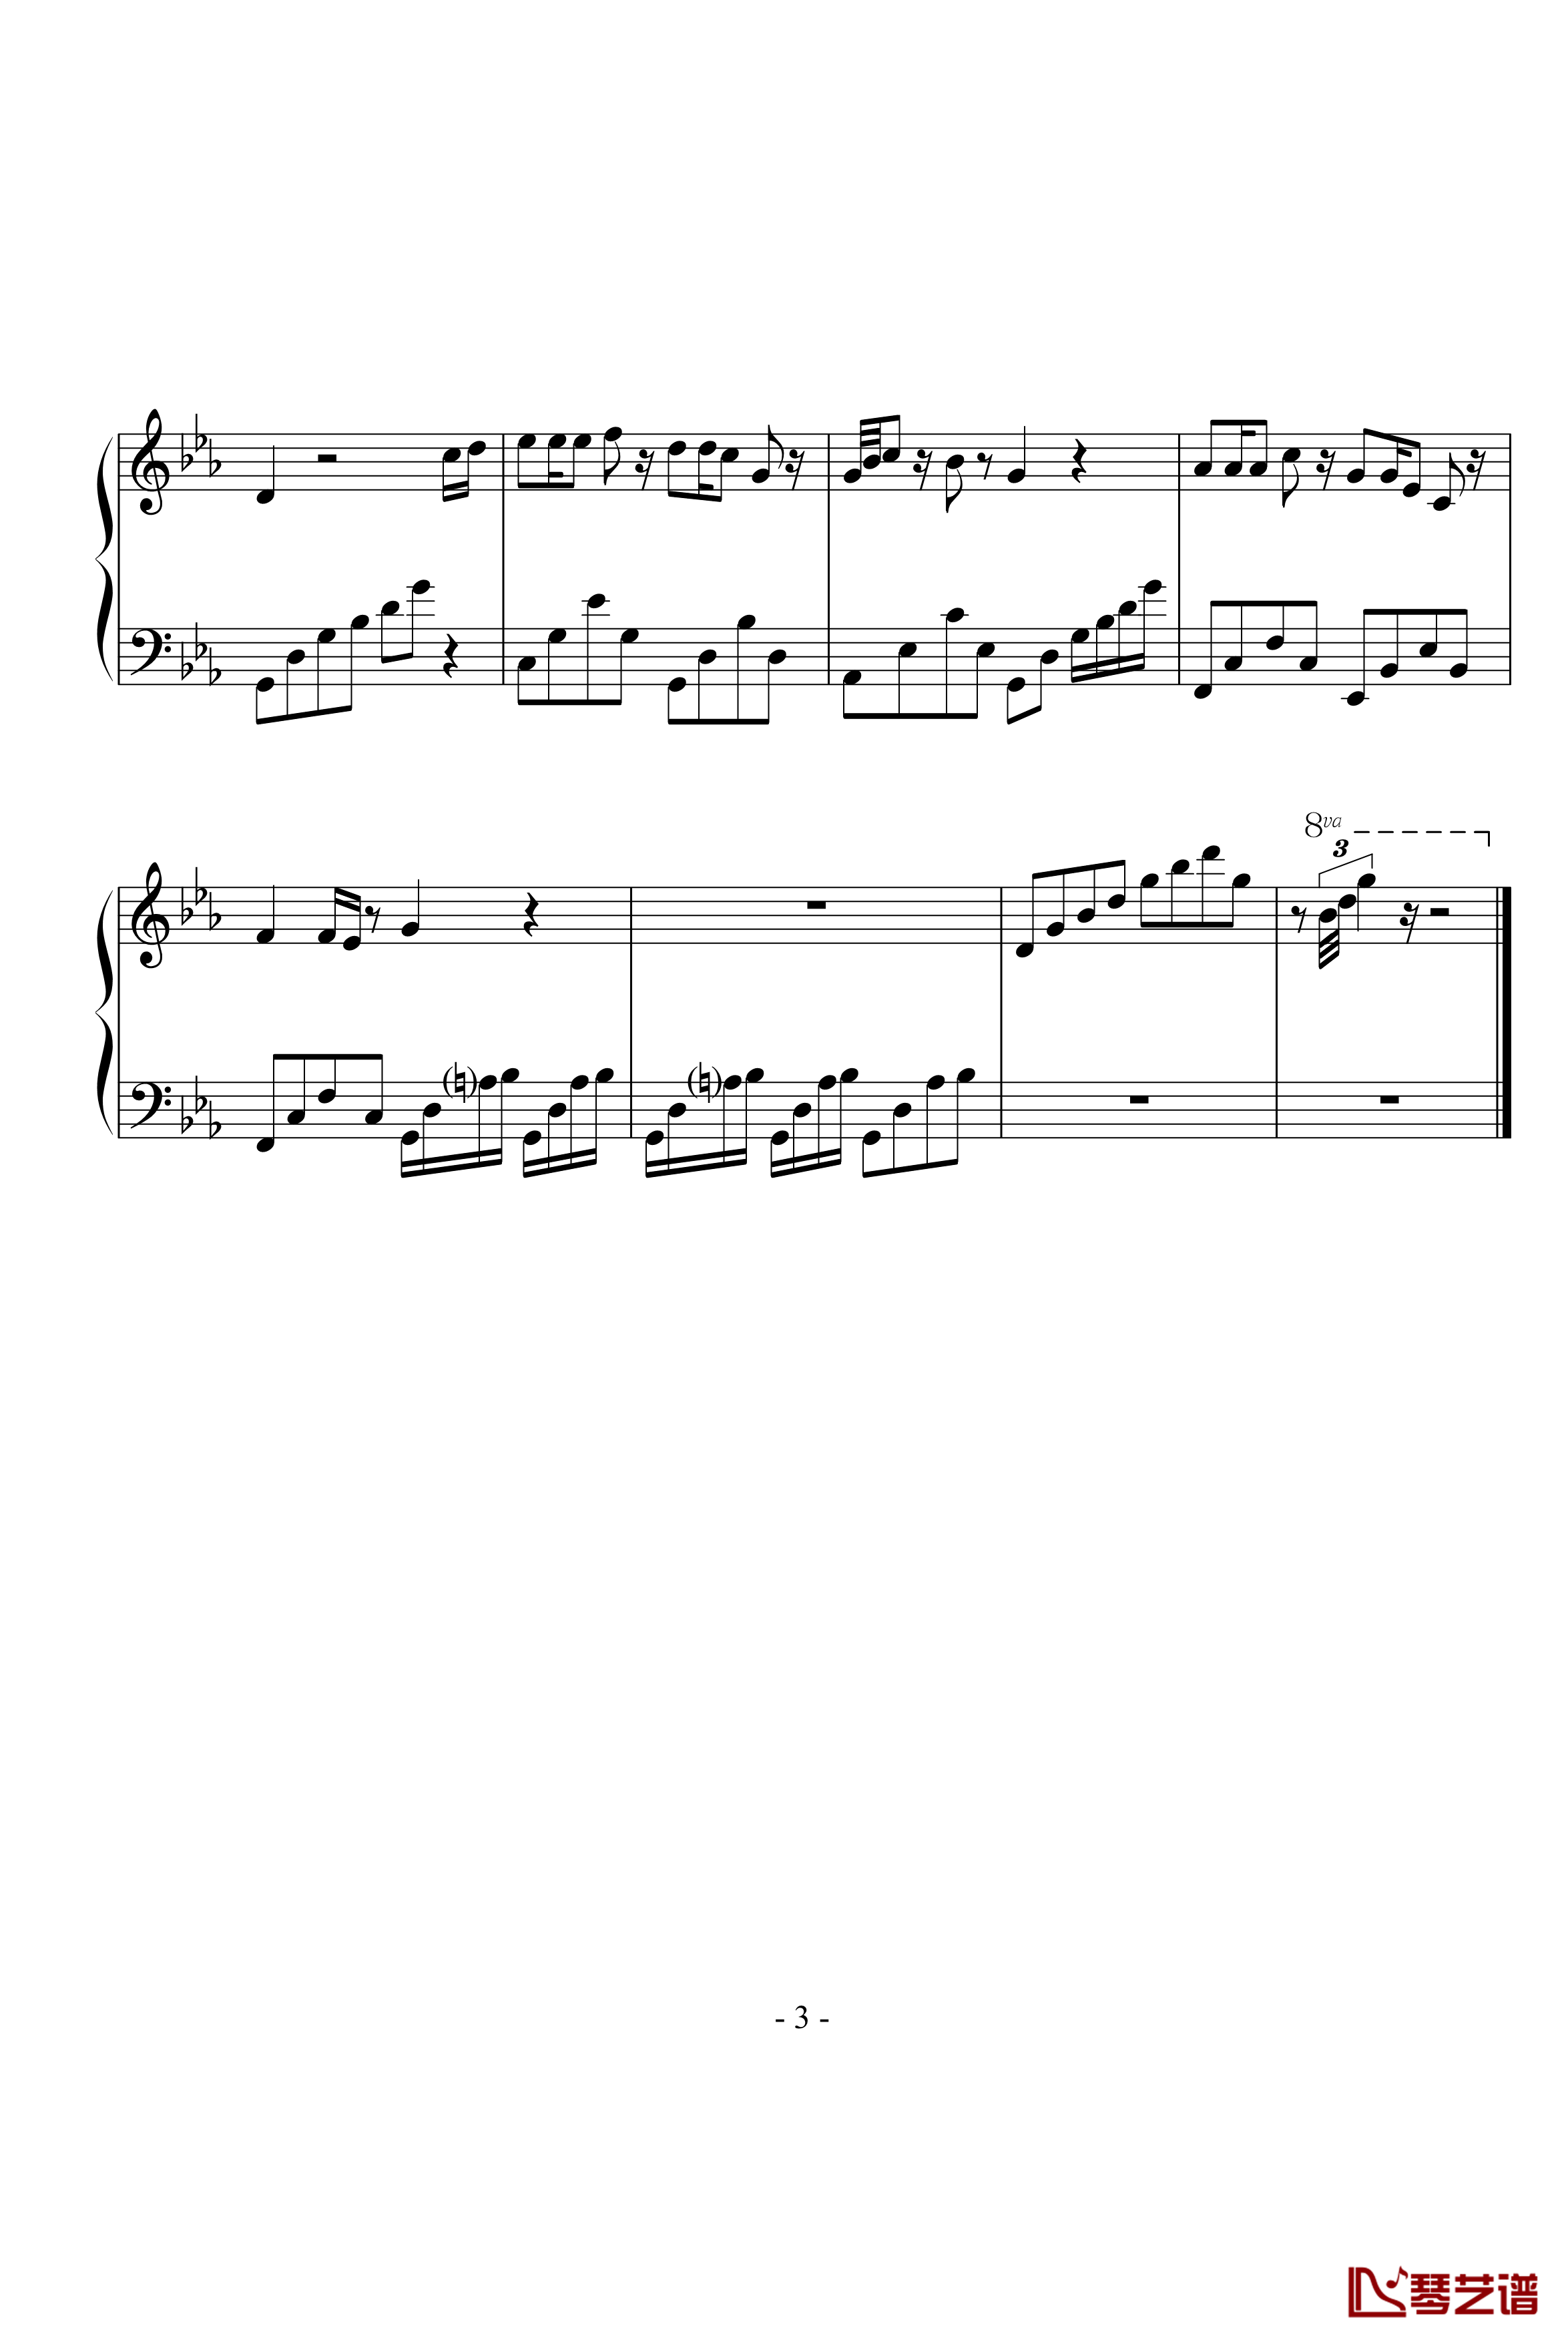 爱的旋律第一章海钢琴谱-延音修改-c4713137103